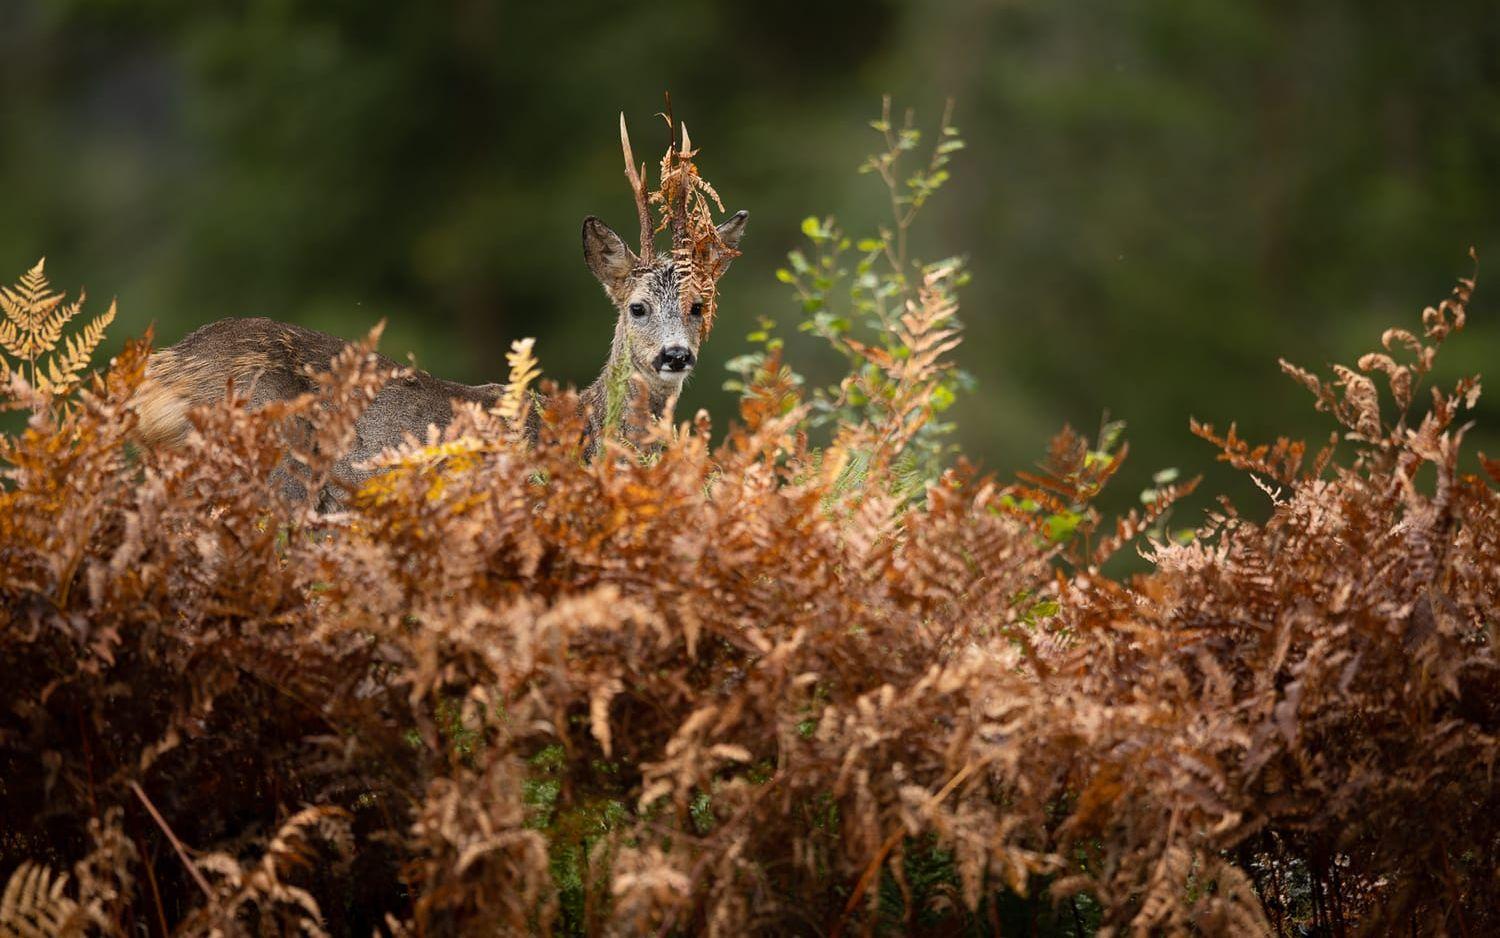 En råbock fotograferad i Ödenäs på hösten. ”Lite kul med ormbunken mellan hornen” konstaterar fotografen.